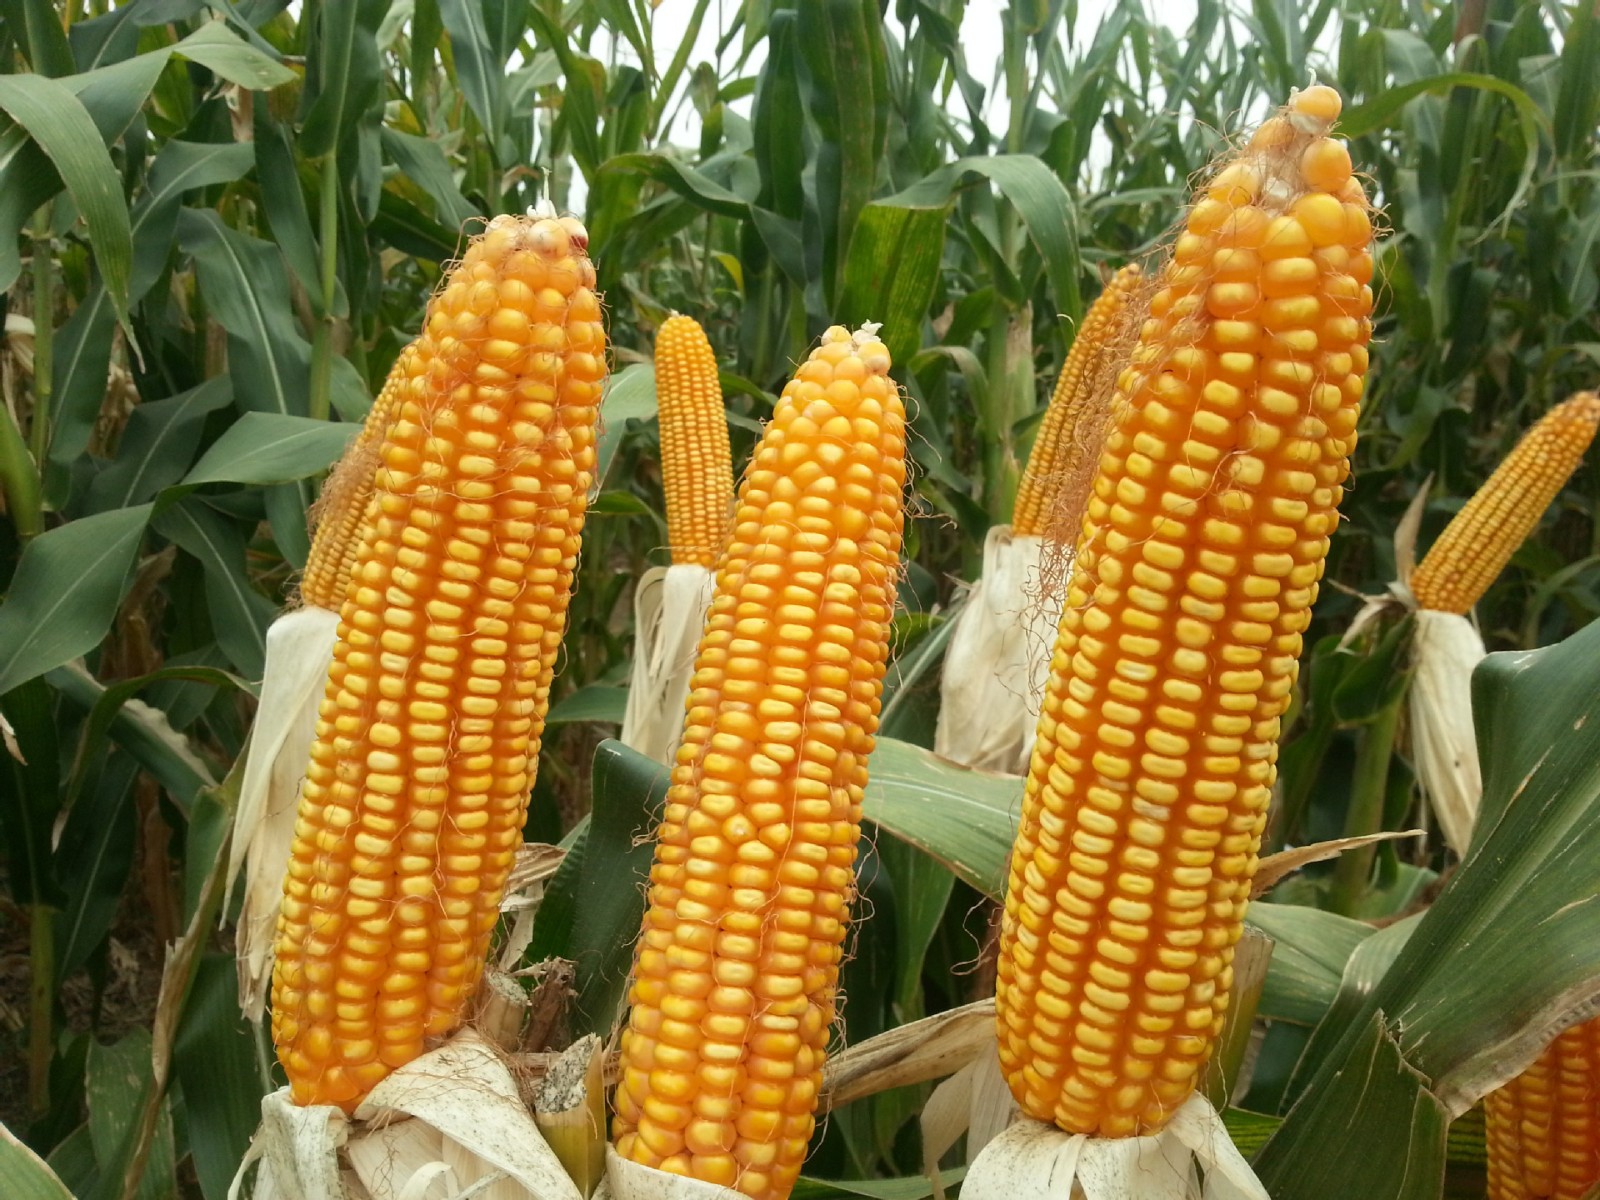 半年一度的“玉米”策略:供需紧张带来看涨预期
